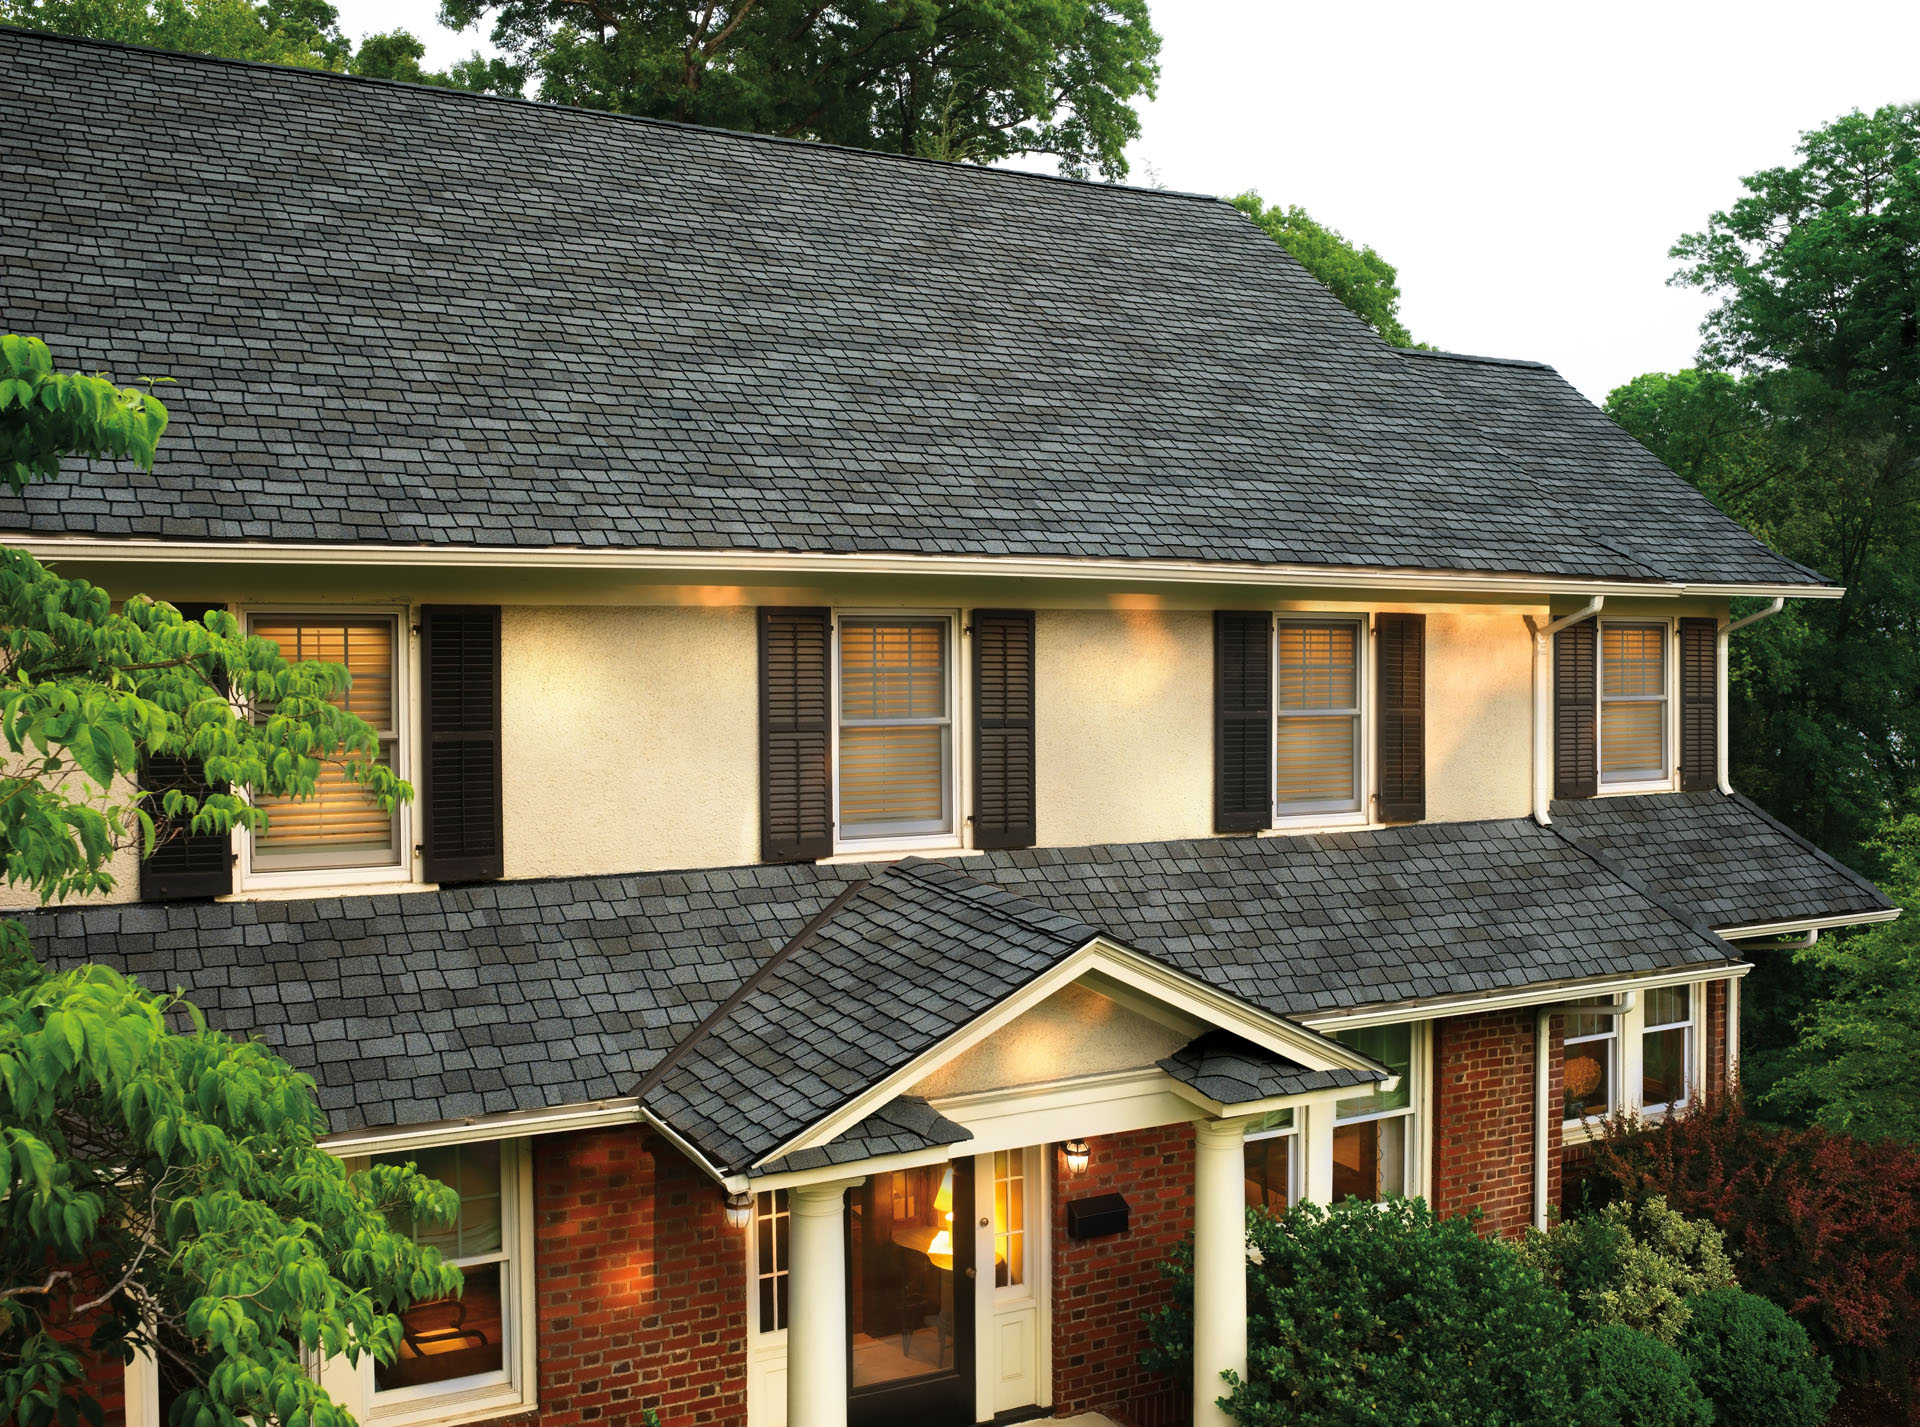 A beautiful, modern asphalt shingle roof on a large two story home.